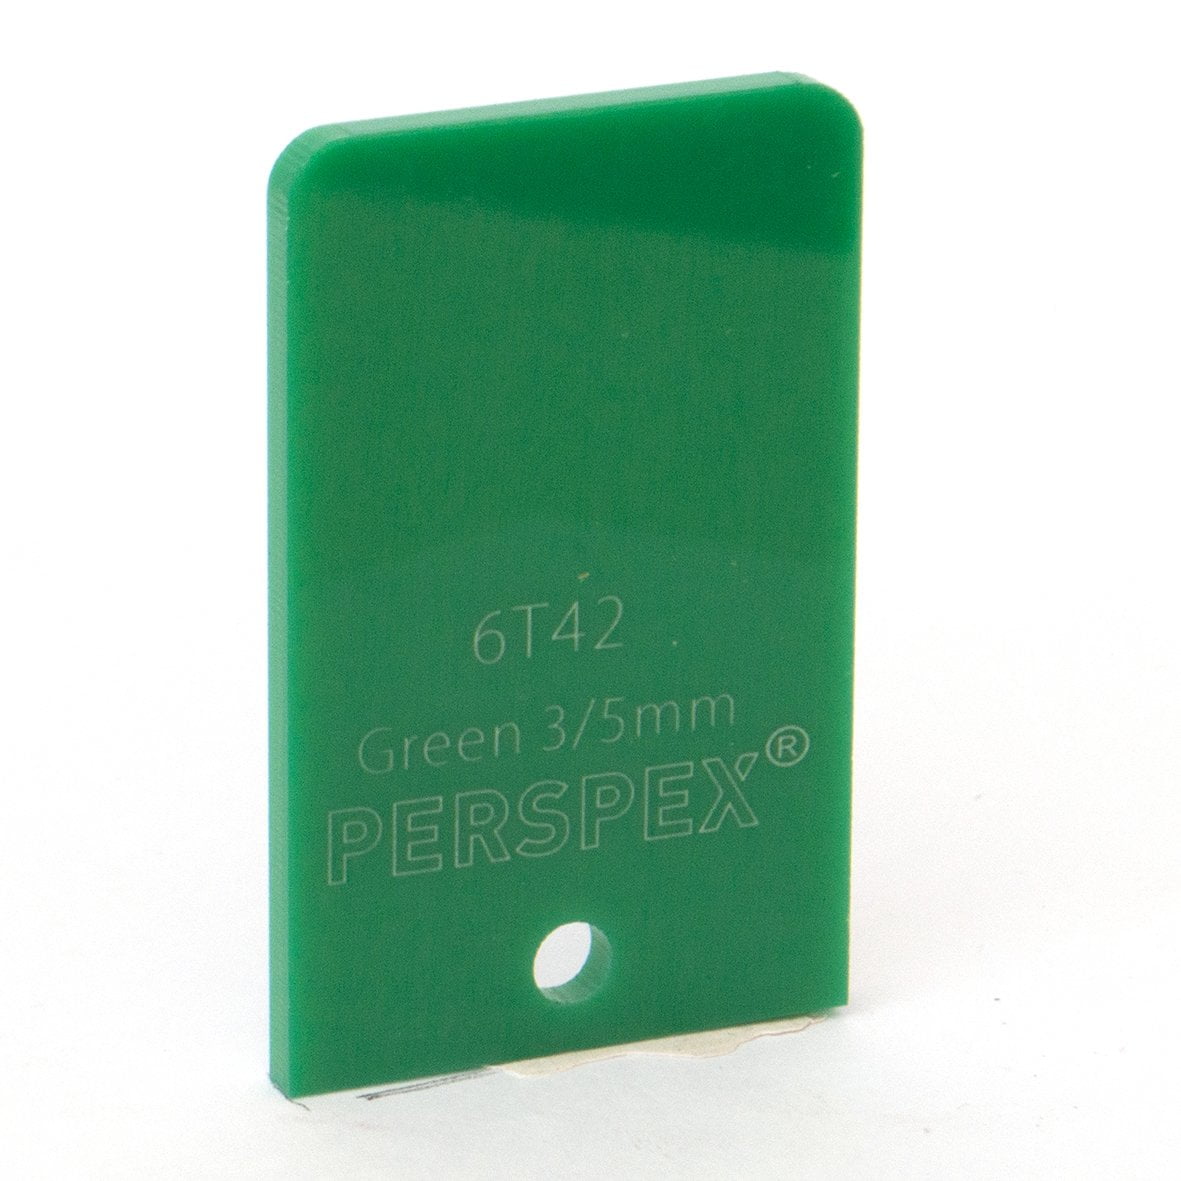 3mm Standard Green 6T42, 1000x600mm